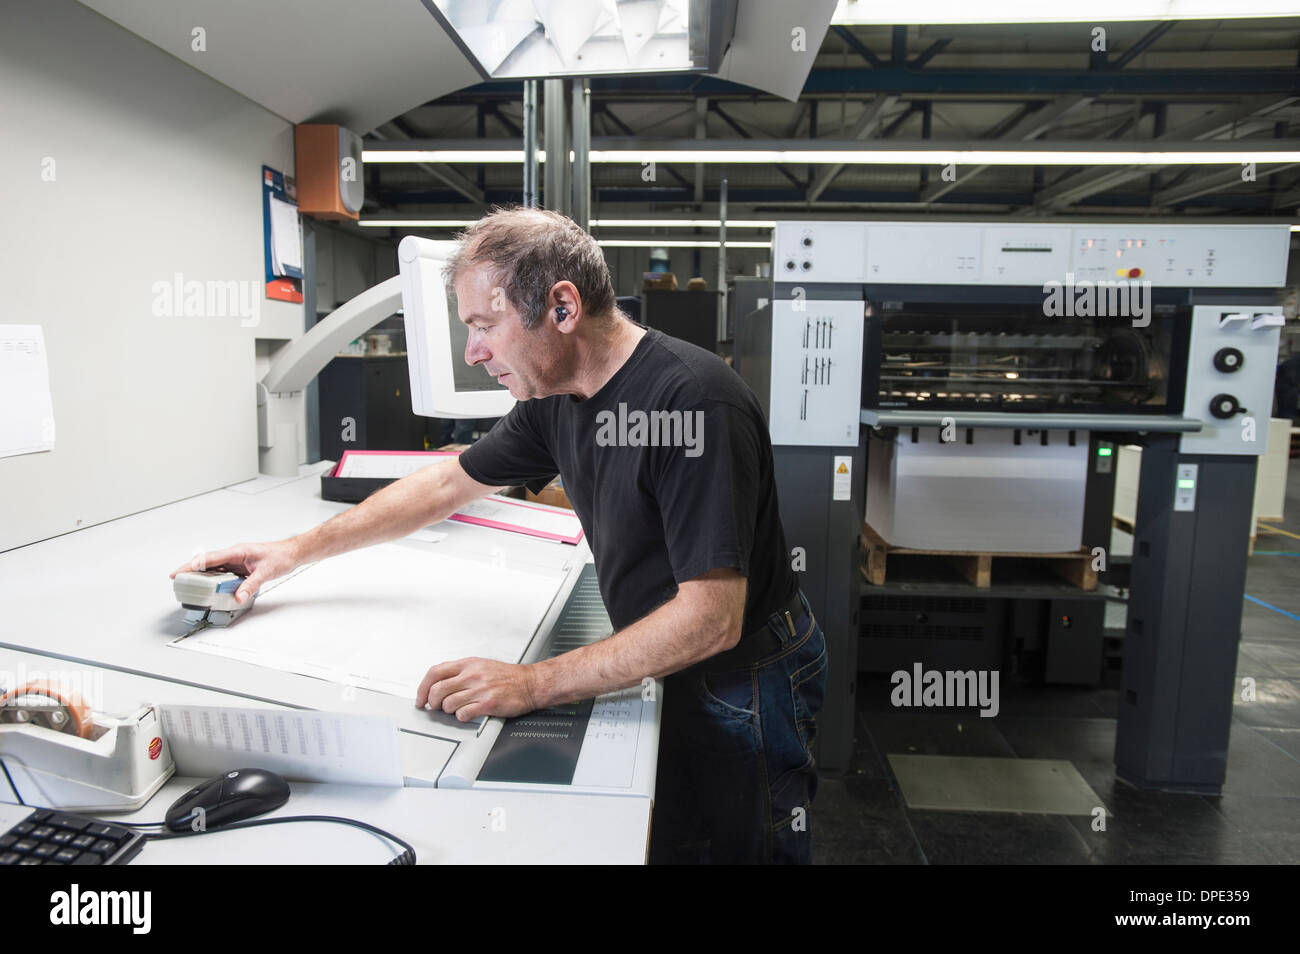 Worker preparing digital printing equipment in print workshop Stock Photo